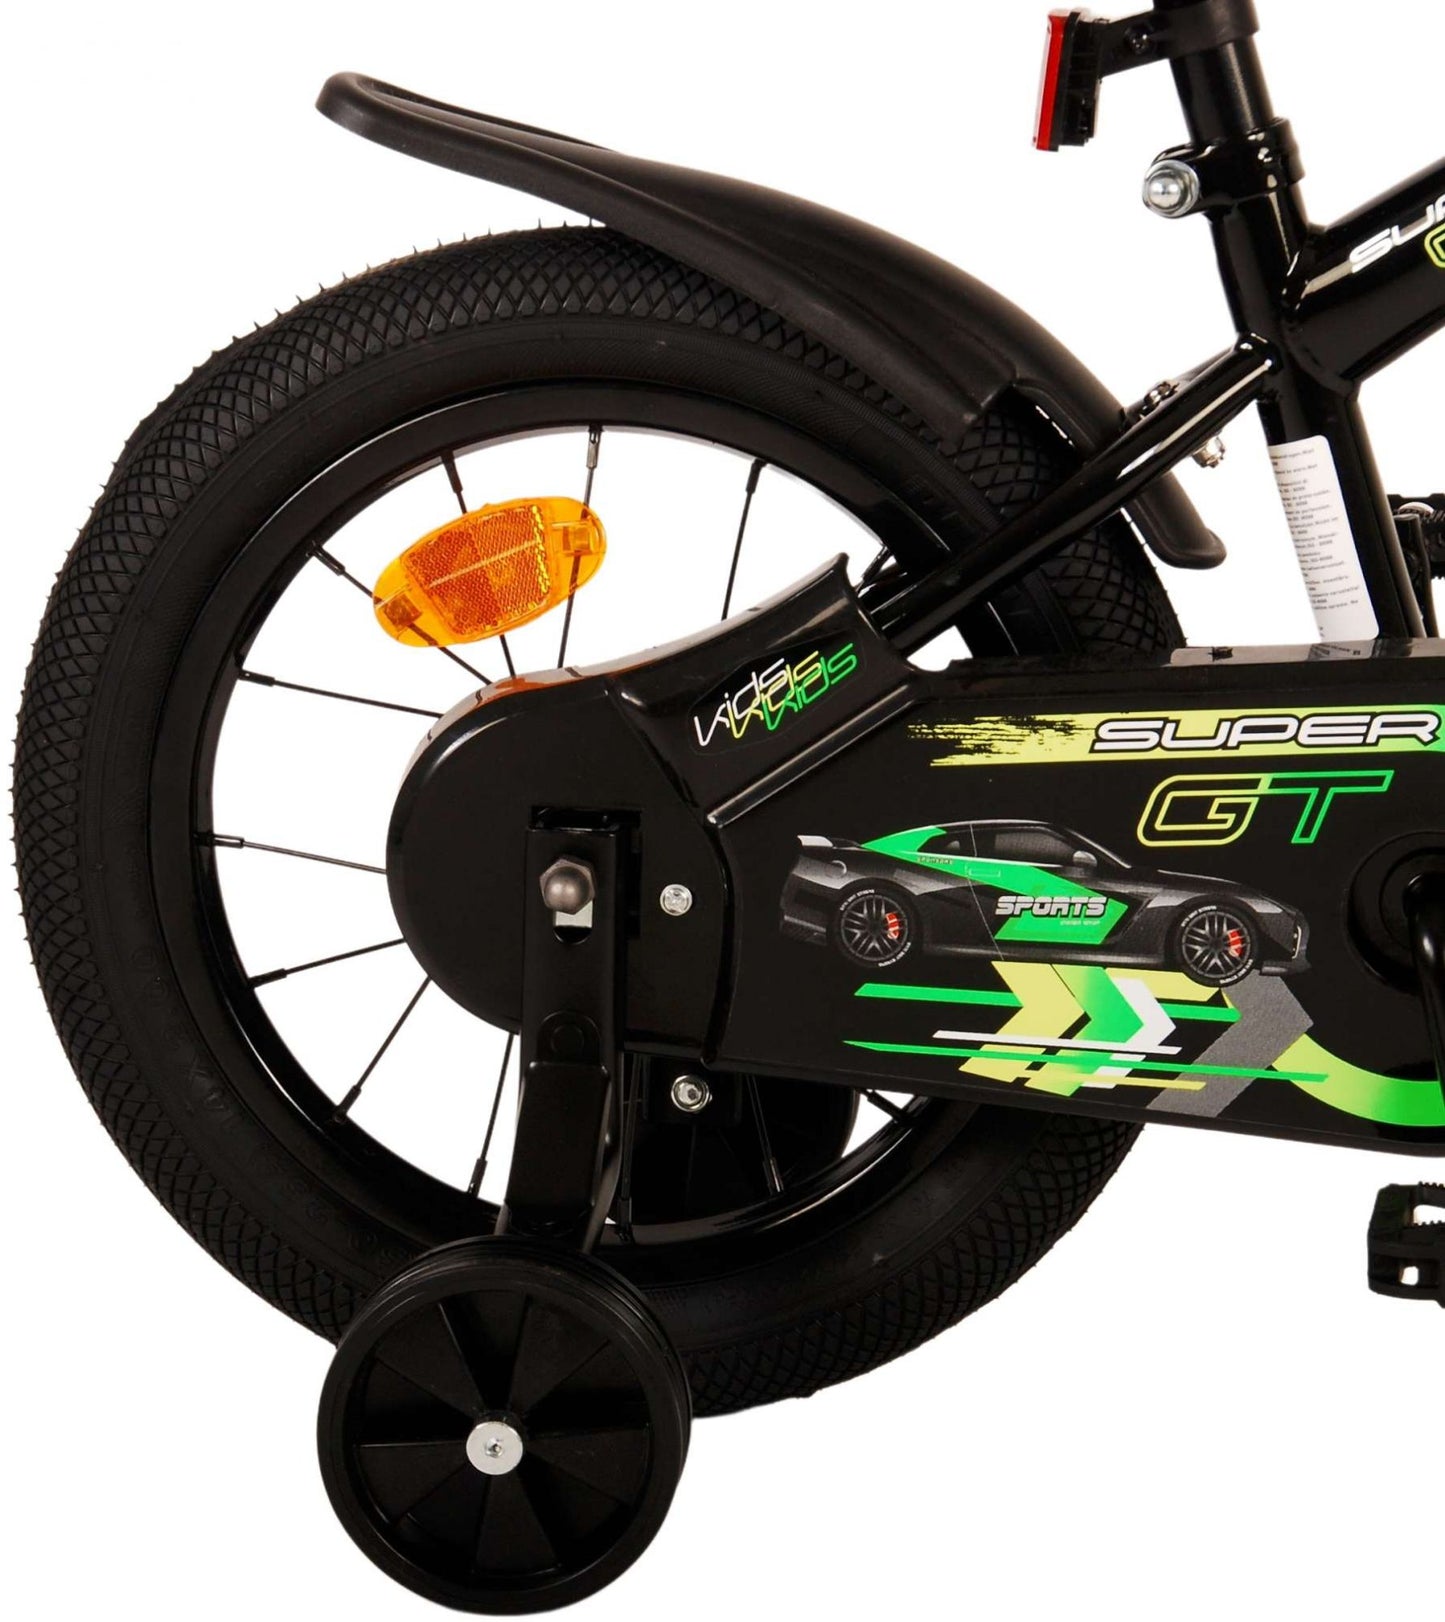 Bike per bambini di Vlatare Super GT - Boys - 14 pollici - Green